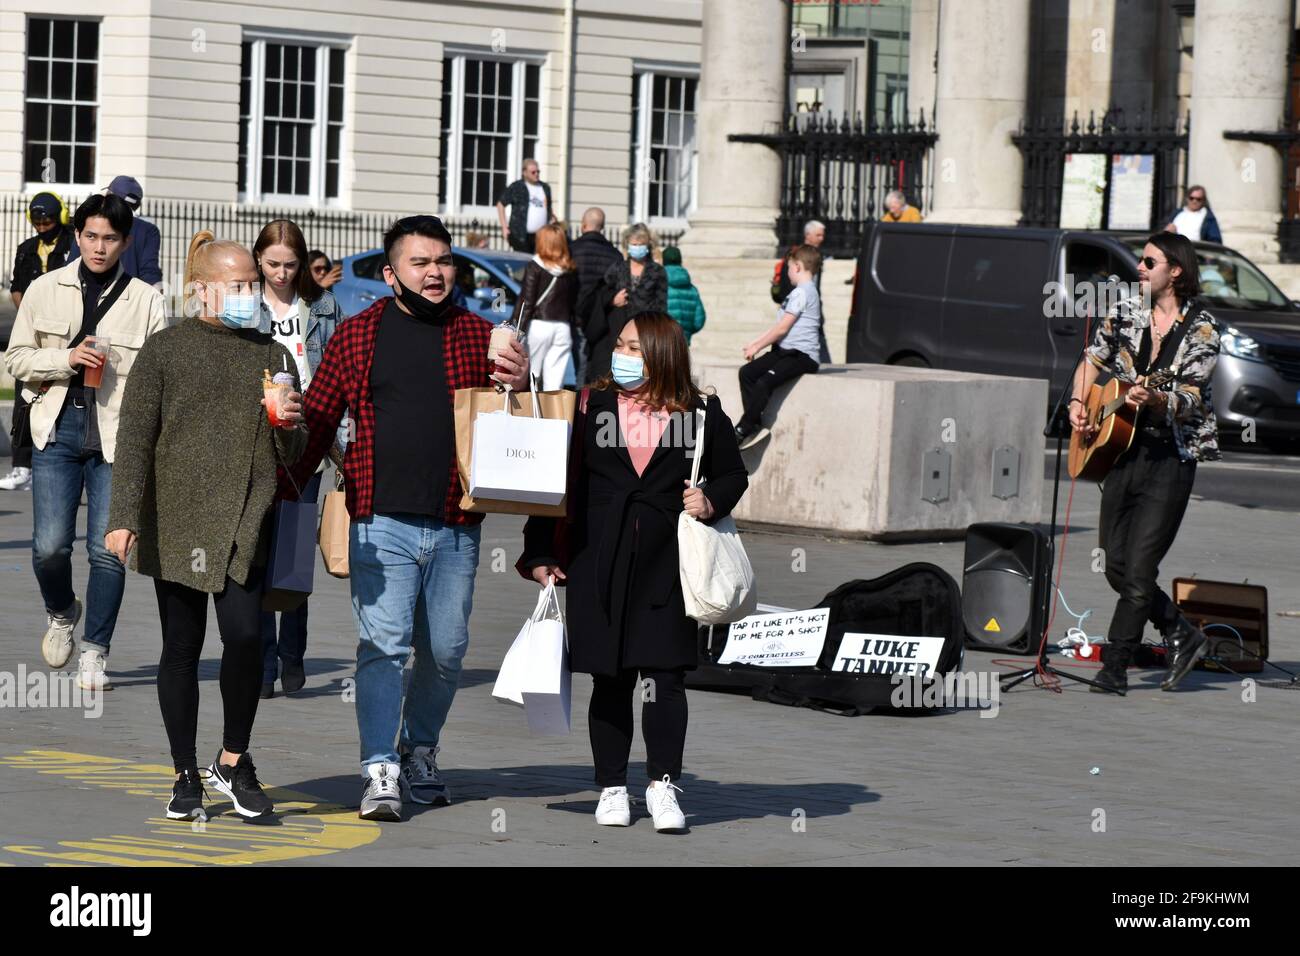 London, Großbritannien 19. April 2021 Sunshine erweckt den Trafalgar Square im Londoner West End zum Leben, da die Beschränkungen für die Sperrung durch Coronaviren gelockert wurden. Kredit: JOHNNY ARMSTEAD/Alamy Live Nachrichten Stockfoto